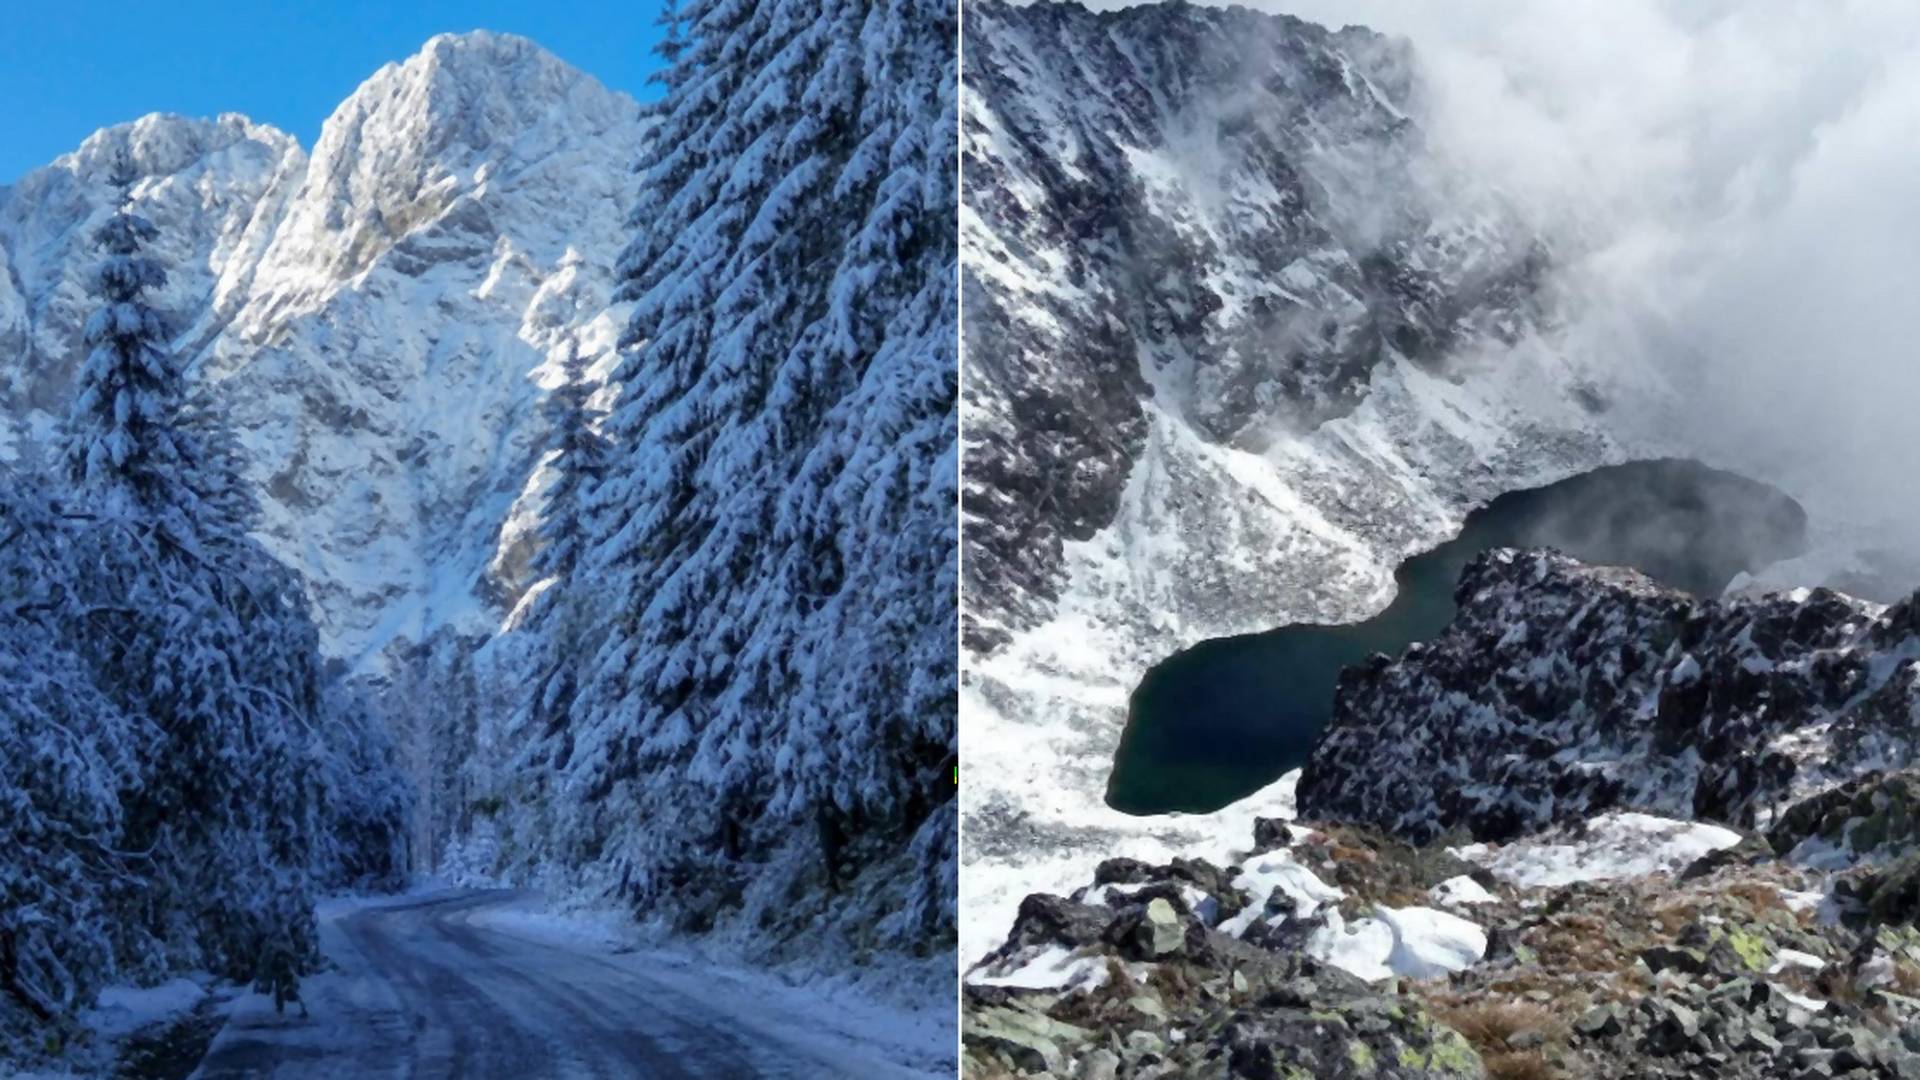 Kedy sa začne lyžiarska sezóna? Pozri si krásne zábery už zasnežených miest zo Slovenska